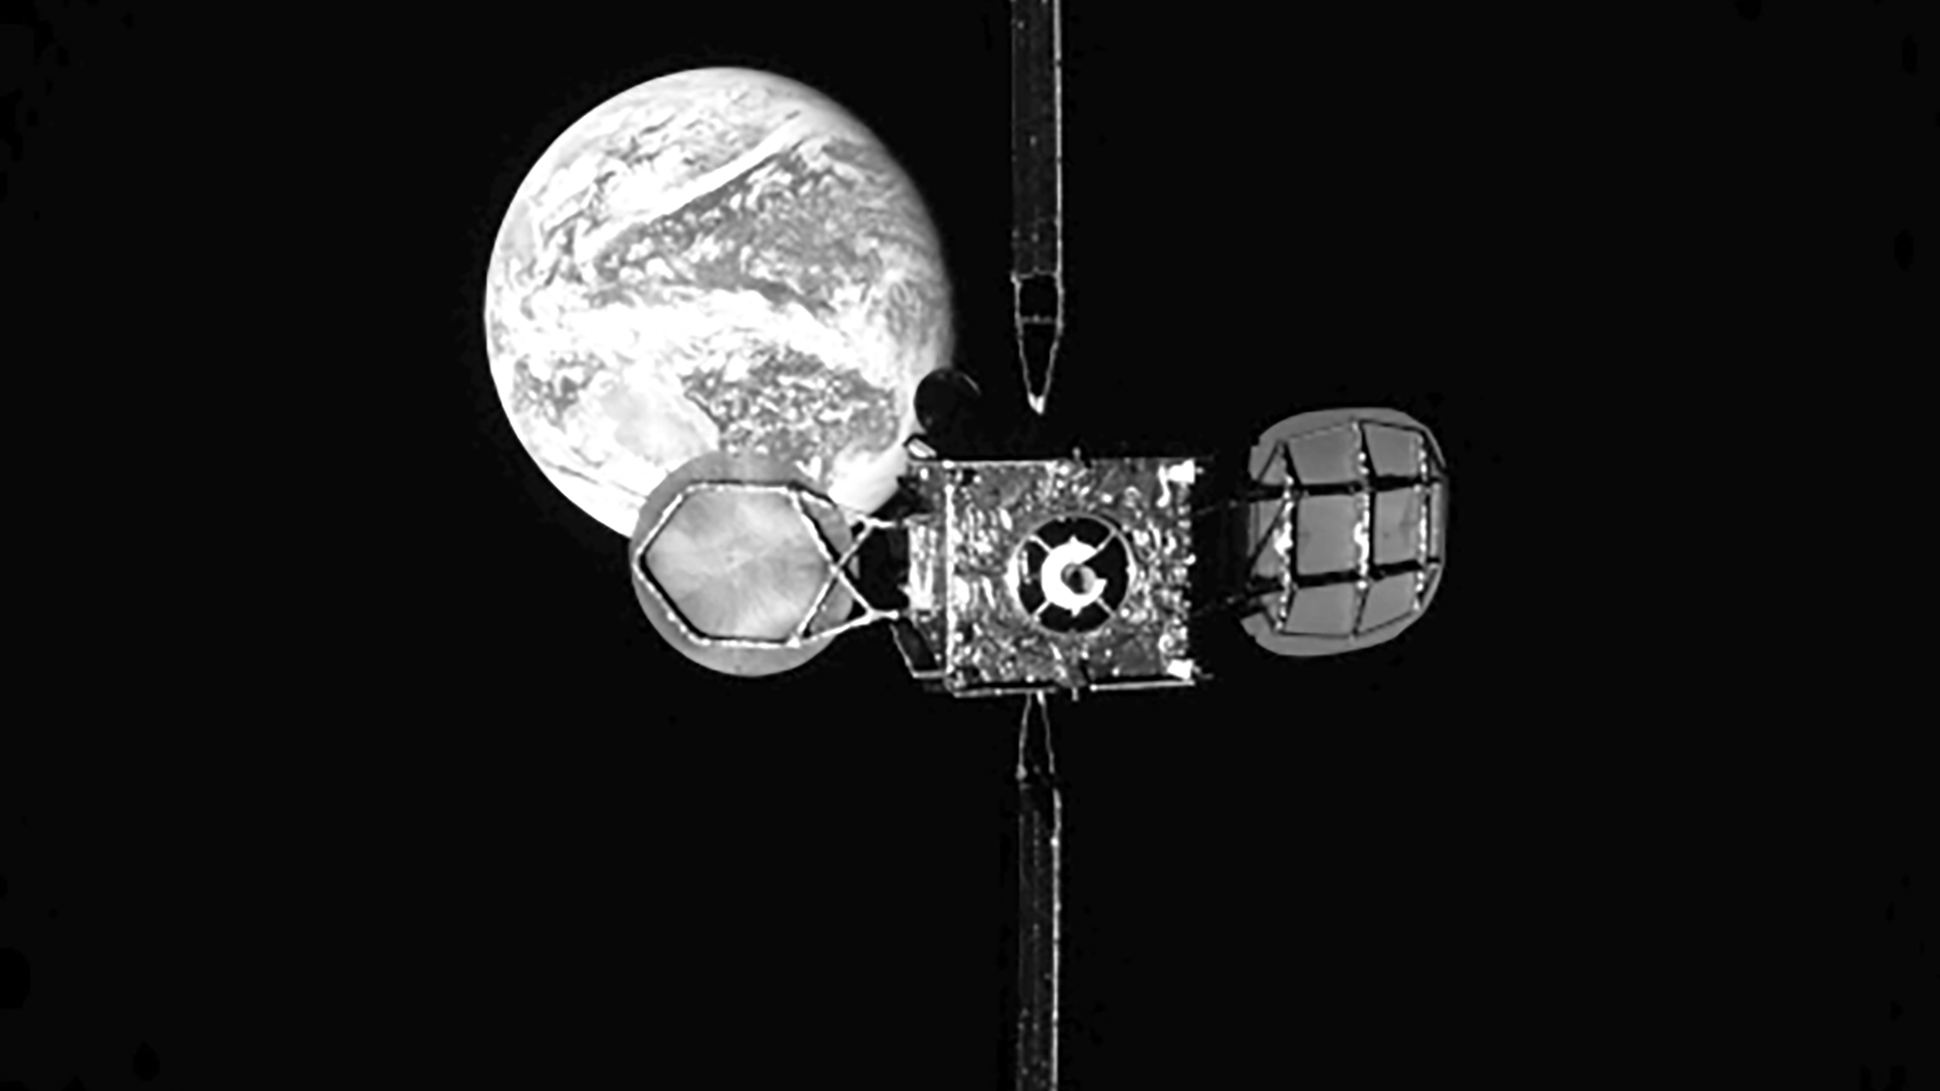 Le satellite de télécommunications Intelsat 901, vu depuis le remorqueur spatial MEV-1, avant qu'il s'y amarre. © Northrop Grumman